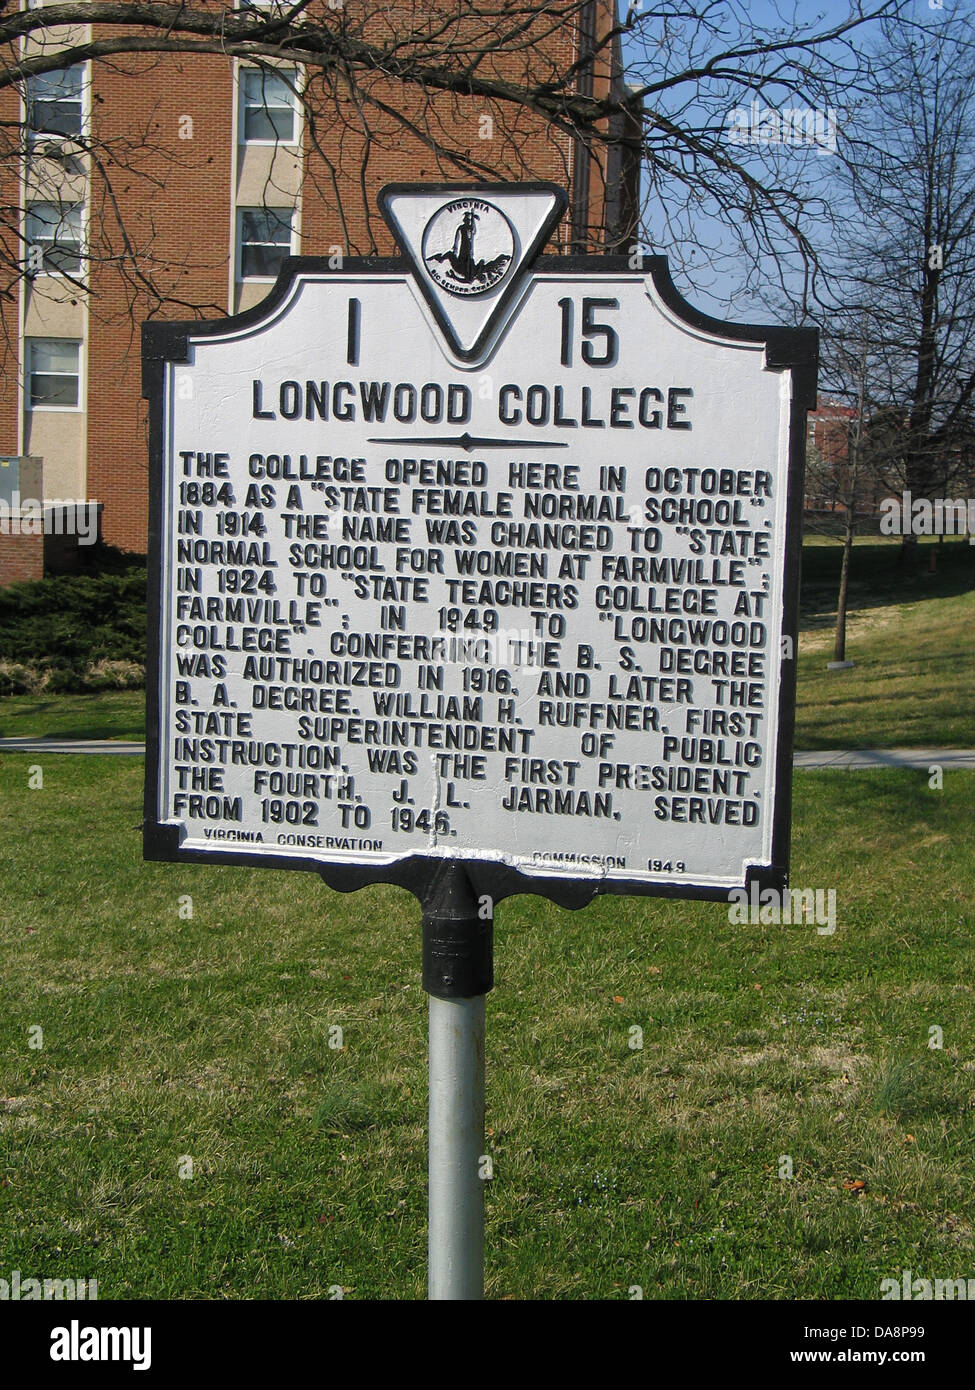 LONGWOOD COLLEGE wurde das College hier im Oktober 1884 als "Staat weibliche Normal School" eröffnet. Im Jahr 1914 war der Name geändert zu "State Normal School für Frauen bei Farmville"; im Jahre 1924, "State Teachers College in Farmville"; im Jahr 1949 "Longwood College". Verleihung der Bachelor-Abschluss wurde ermächtigt, im Jahr 1916, und später die B.A.-Abschluss. William H. Ruffner, erste staatliche Superintendent des öffentlichen Unterrichts, war der erste Präsident. Die vierte, J. L. Jarman, war von 1902 bis 1946. Virginia Conservation Commission, 1949 Stockfoto